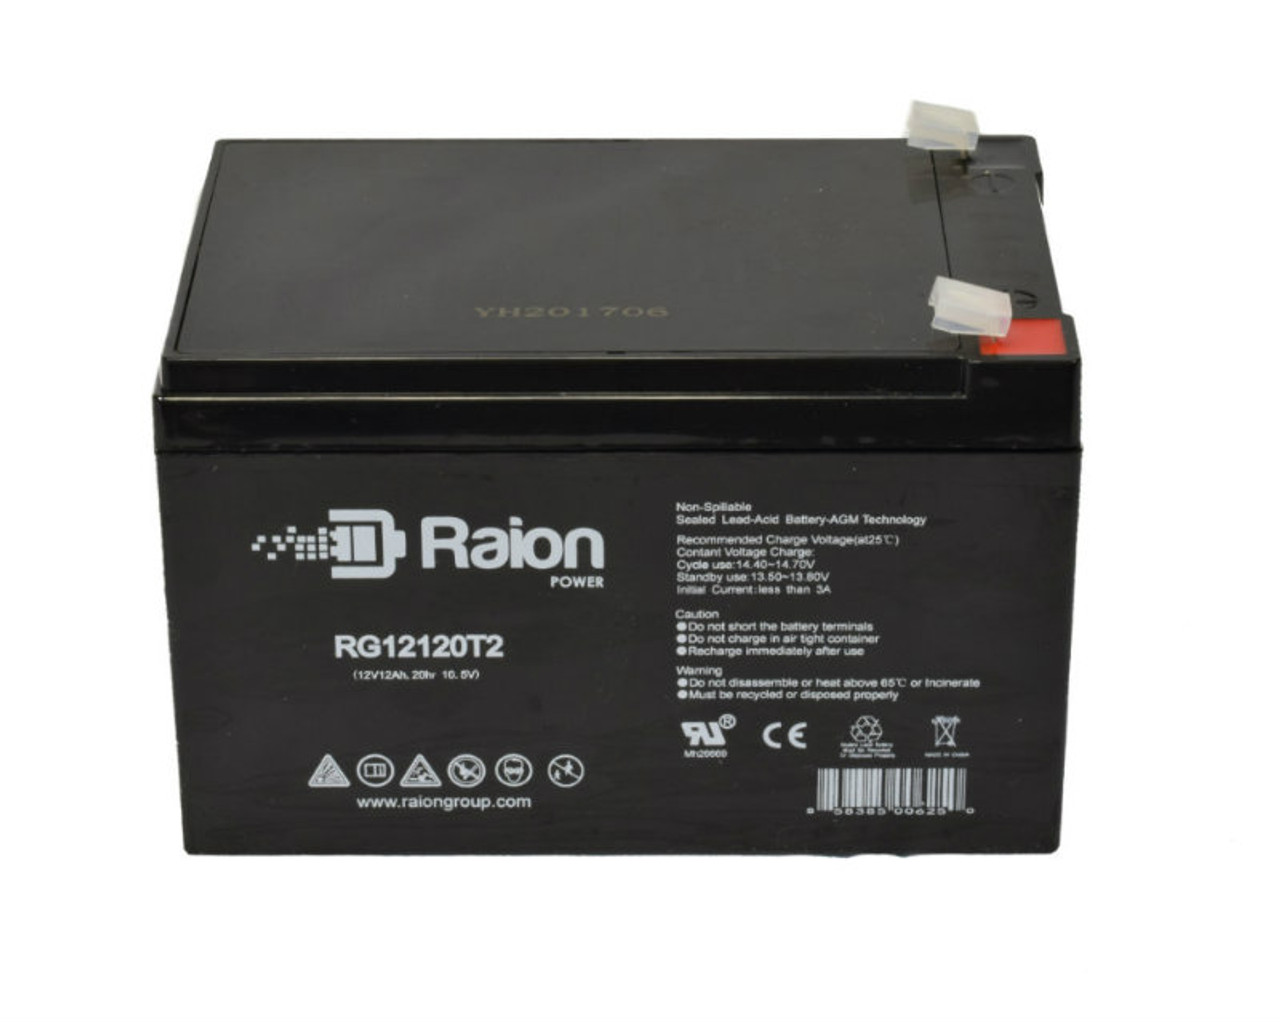 Raion Power RG12120T2 SLA Battery for Duramp NP10-12